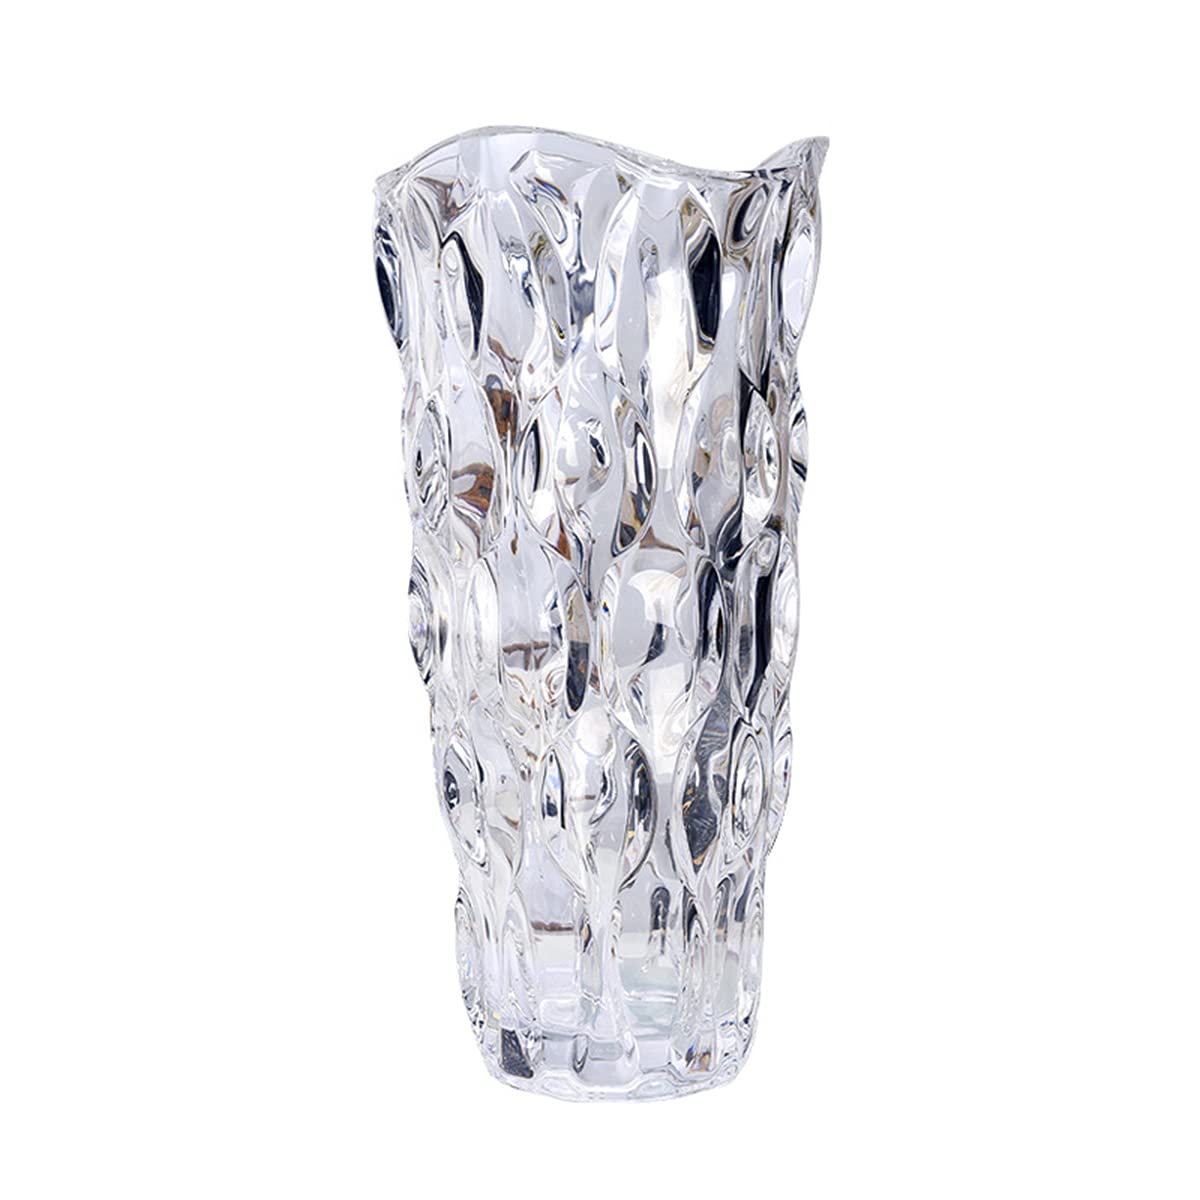 ガラス フラワーベース 透明 花瓶 ガラス おしゃれ 大 花瓶 北欧 花瓶 30cm グラデーション 現代 シンプル 透明 広口 花器 部屋 玄